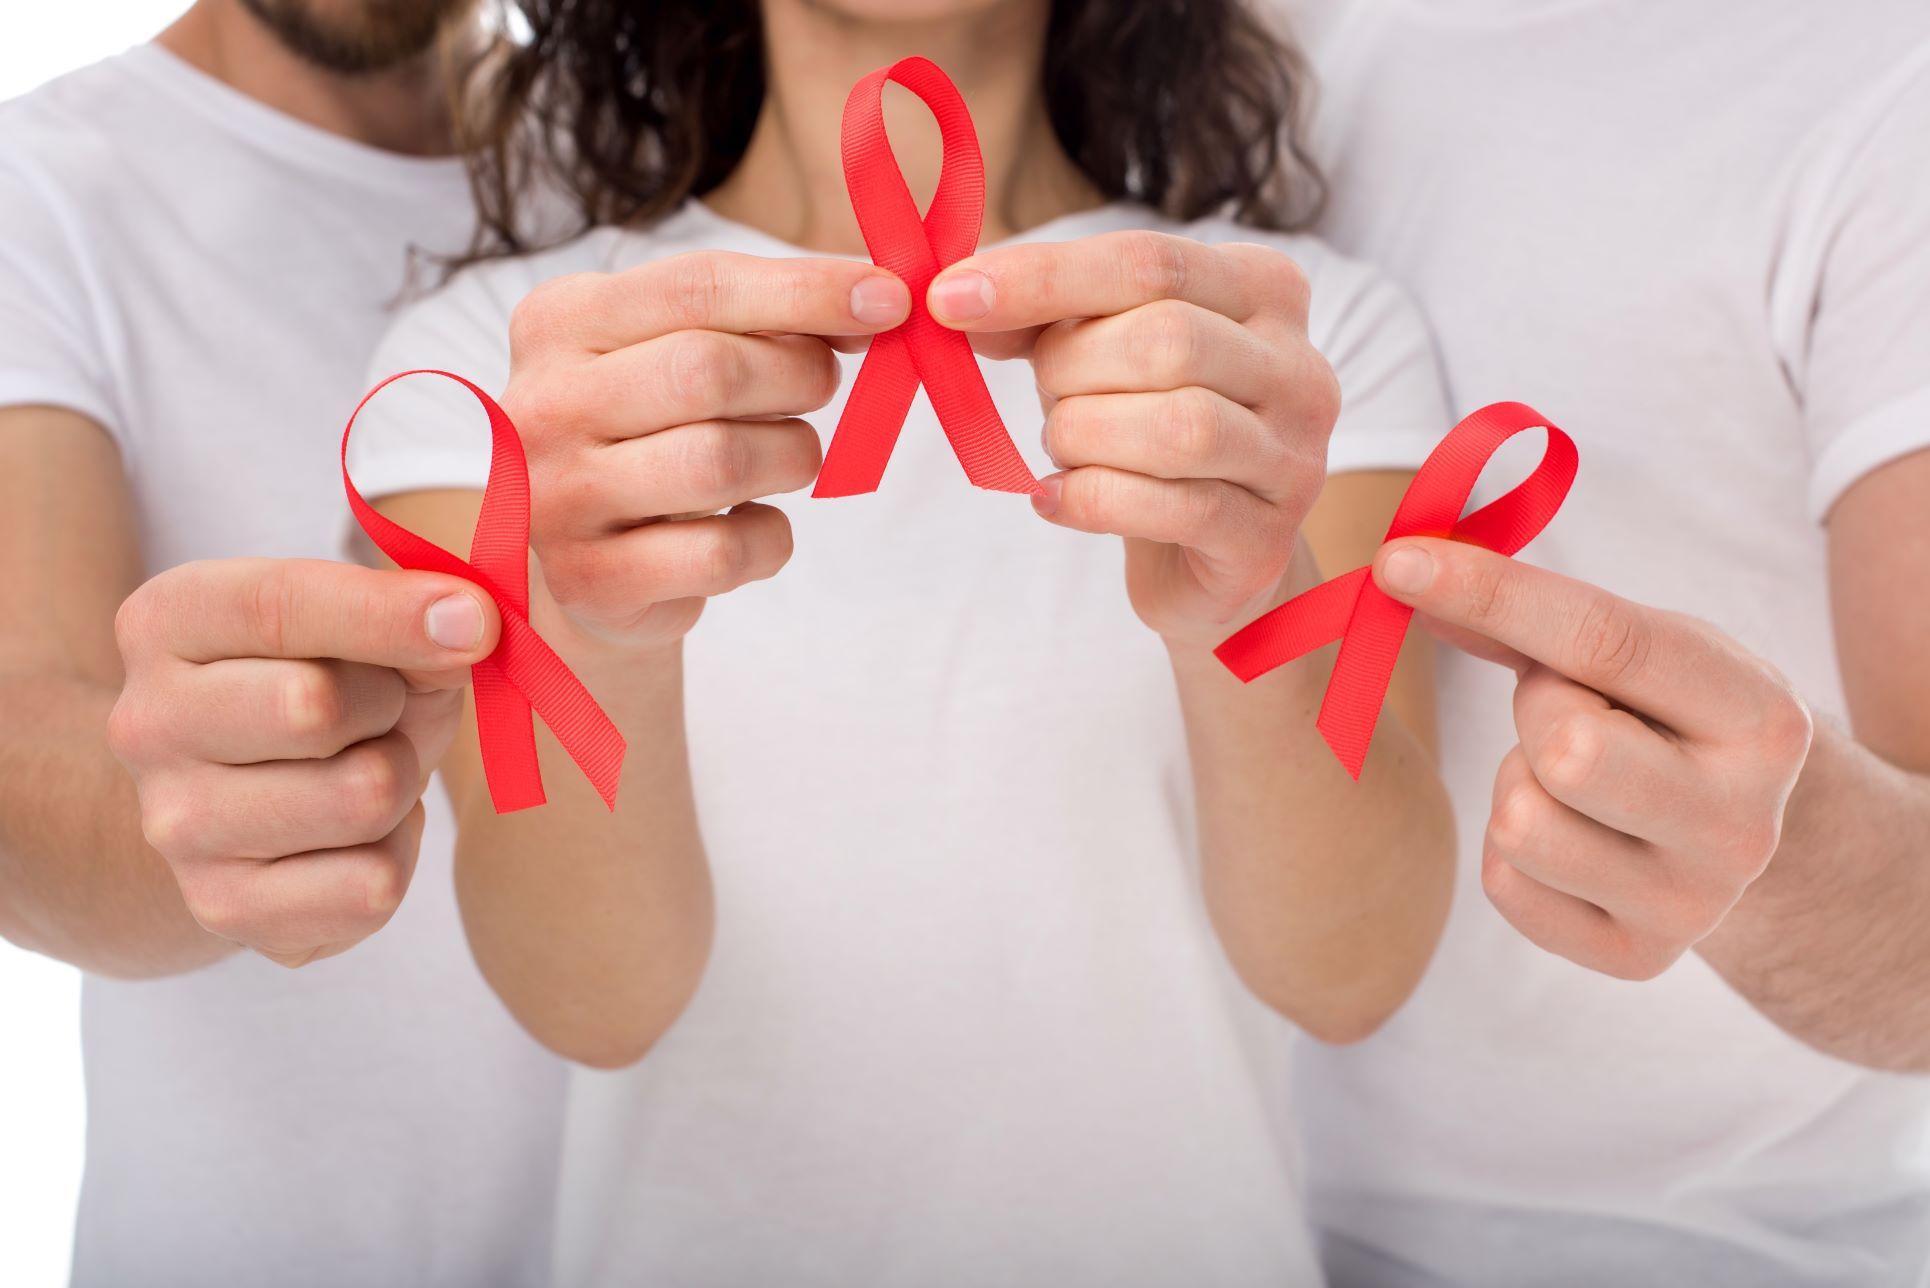 Dia Mundial de Luta contra a AIDS